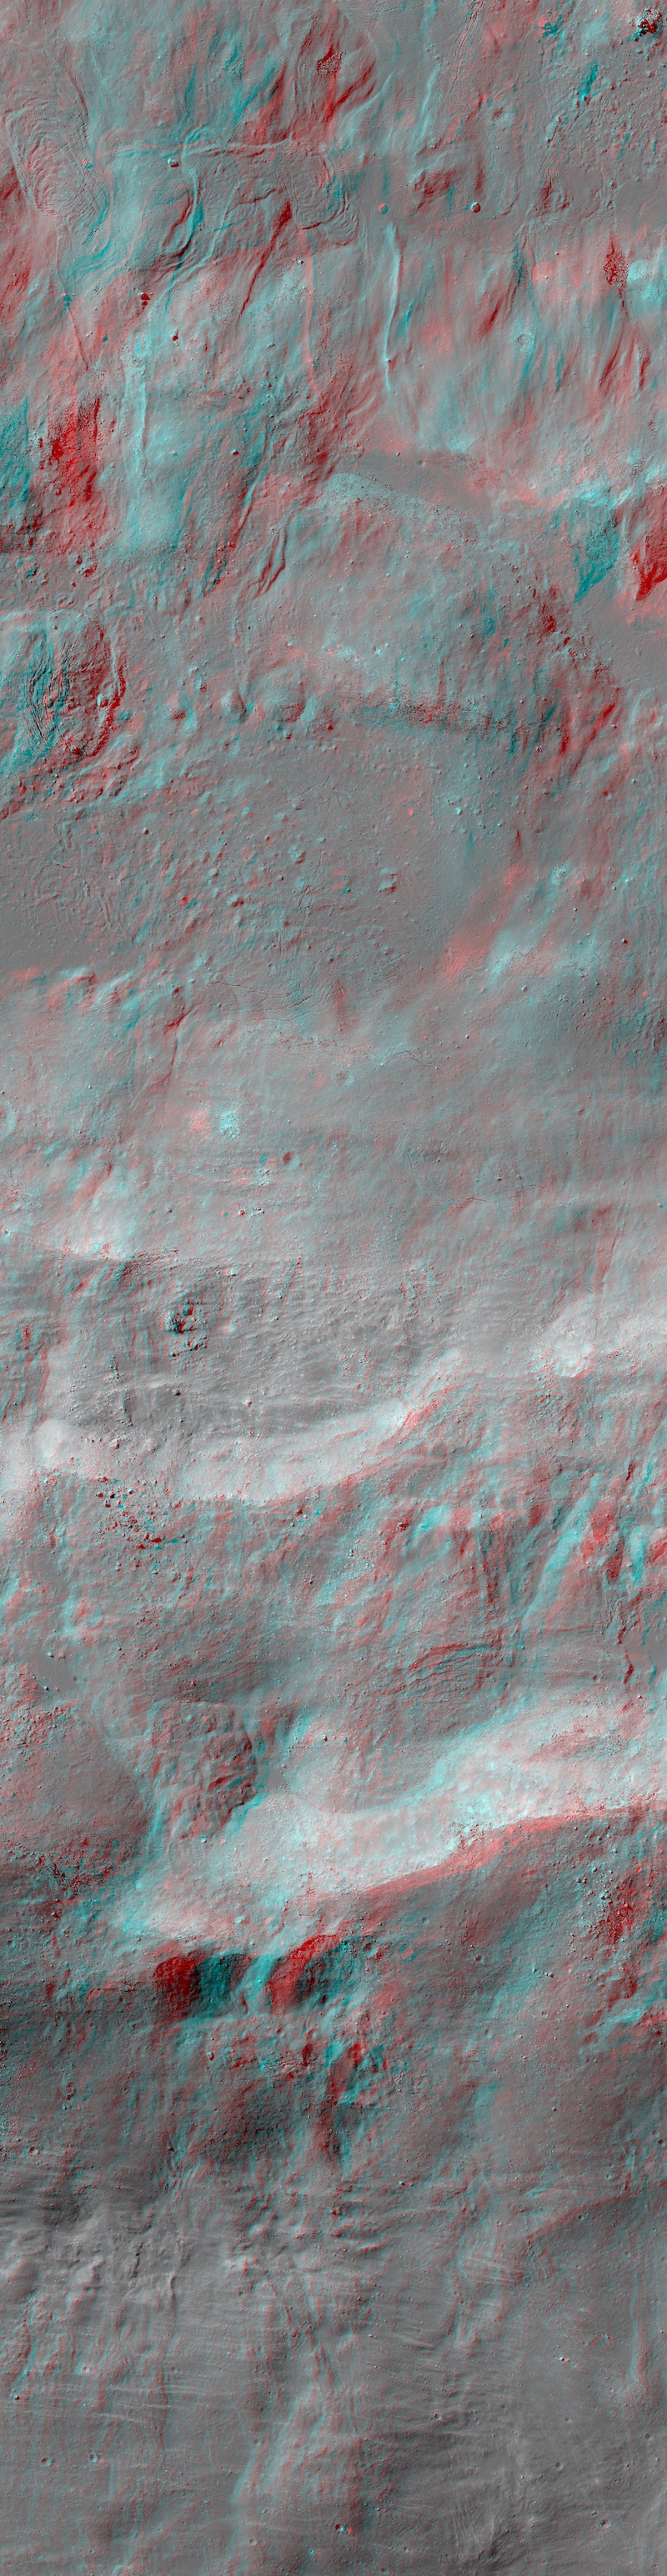 red-blue 3D look at rough lunar terrain